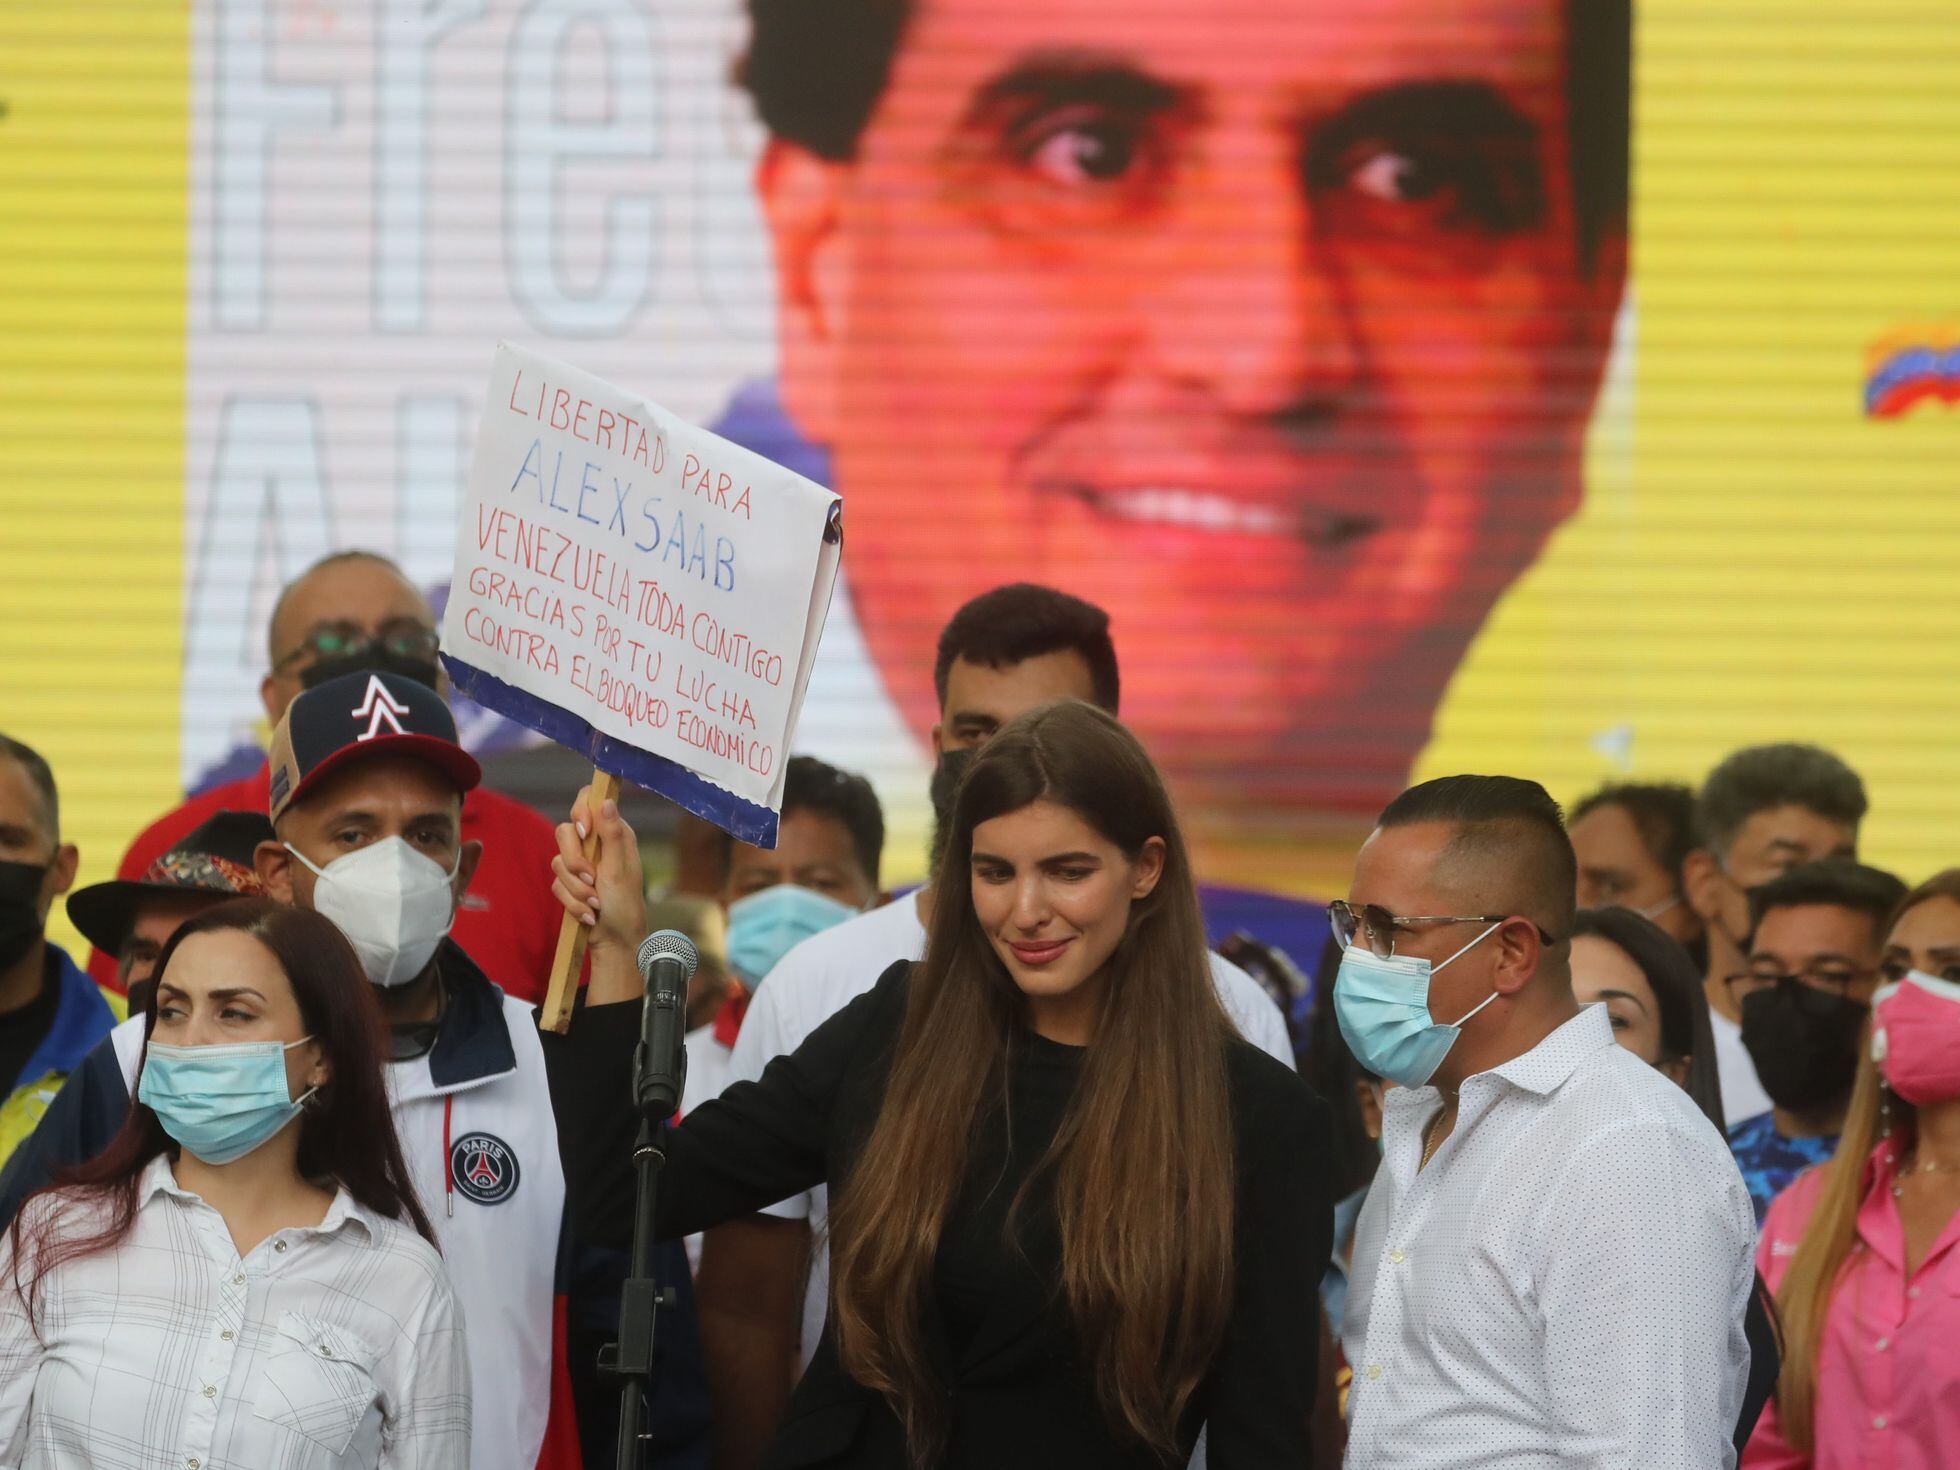 El chavismo abraza a Alex Saab como a un mártir | Internacional | EL PAÍS